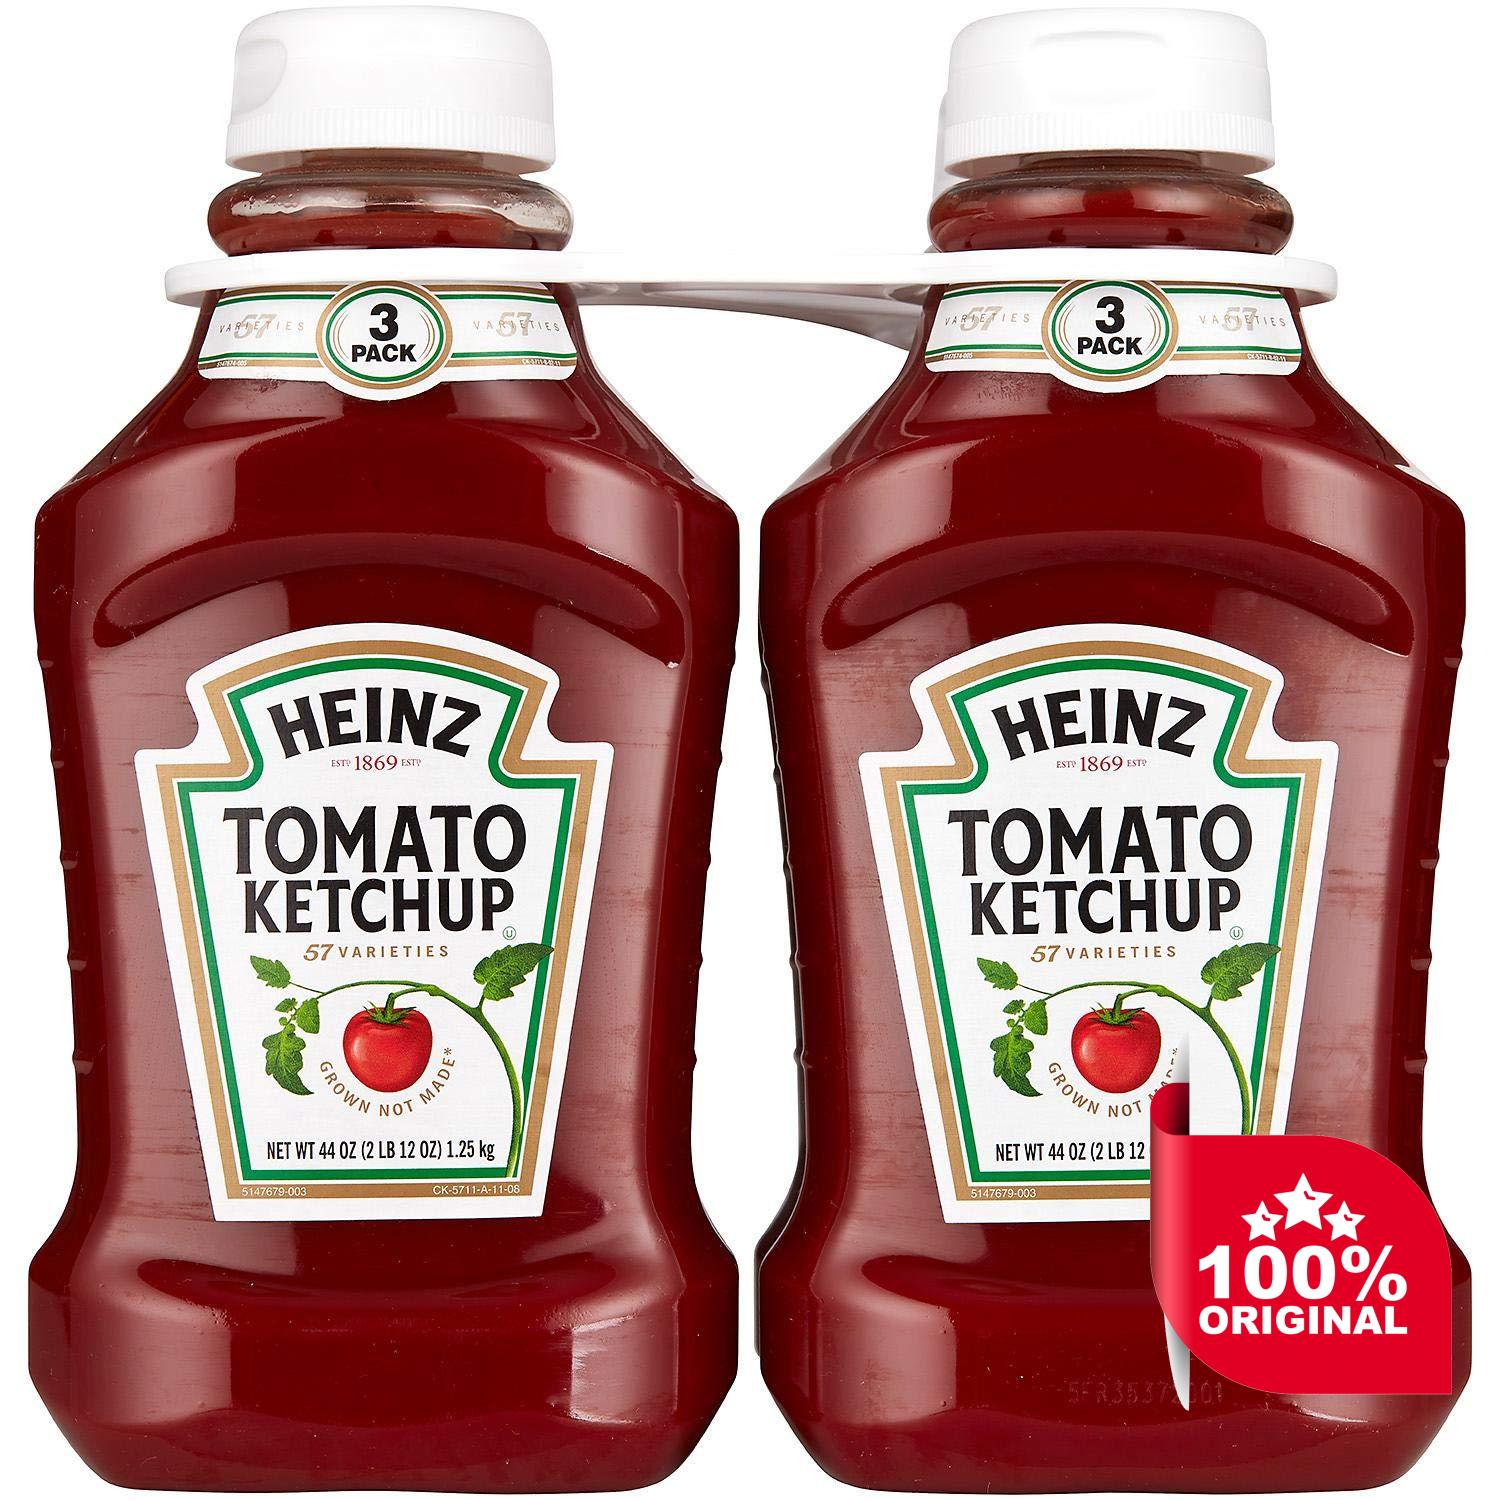 Кетчуп на английском. "Ketchup ""Heinz"" Tomato 570g  ". Ketchup Mayo Heinz. Heinz 1706 томат Хайнц. Mayonnaise Heinz Heinz.